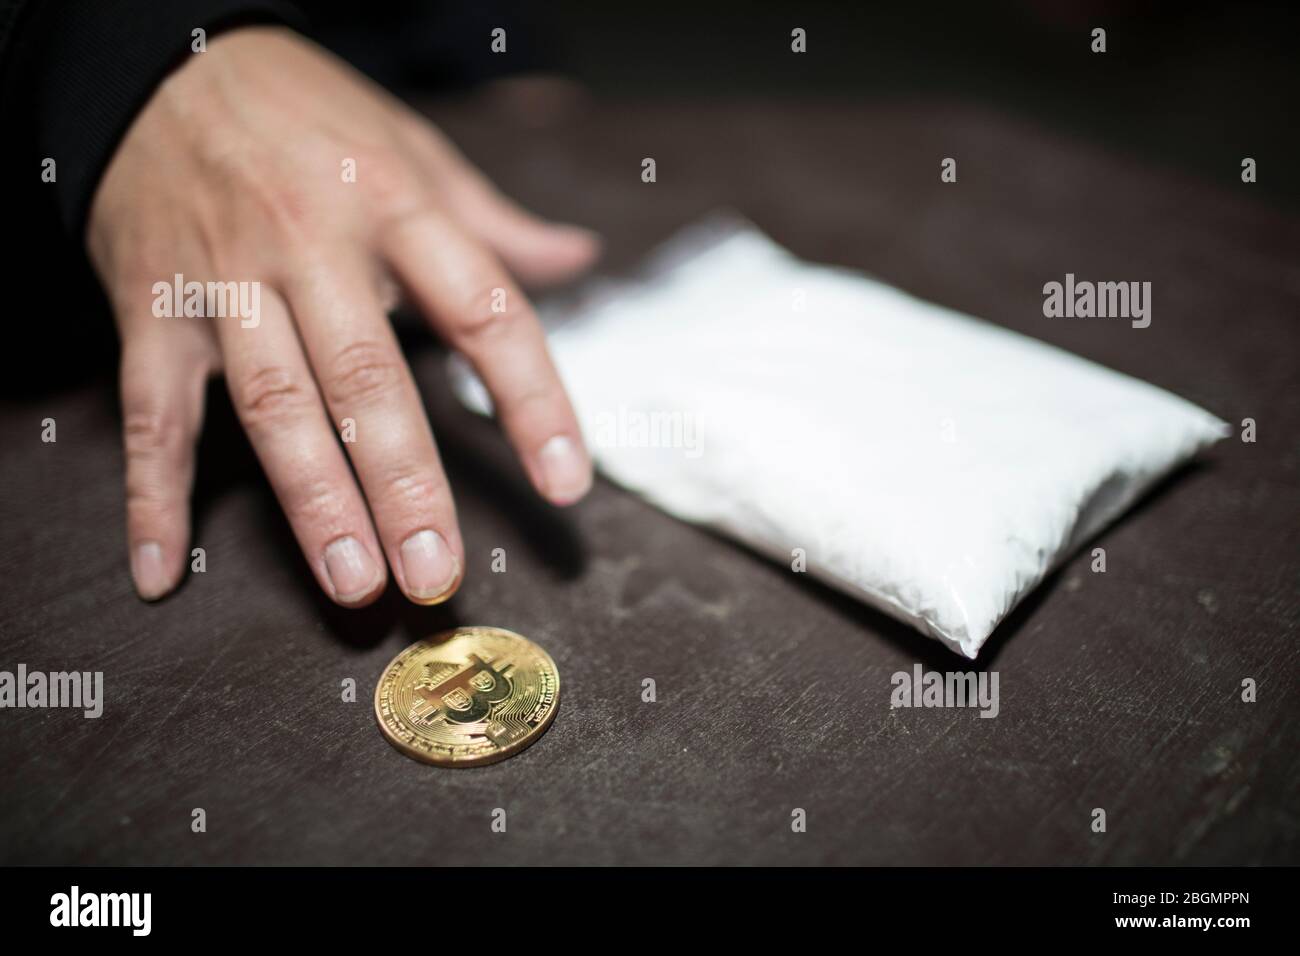 L'uomo ottiene Bitcoin per le droghe. Concetto di moneta criptovaluta doggy. Foto Stock